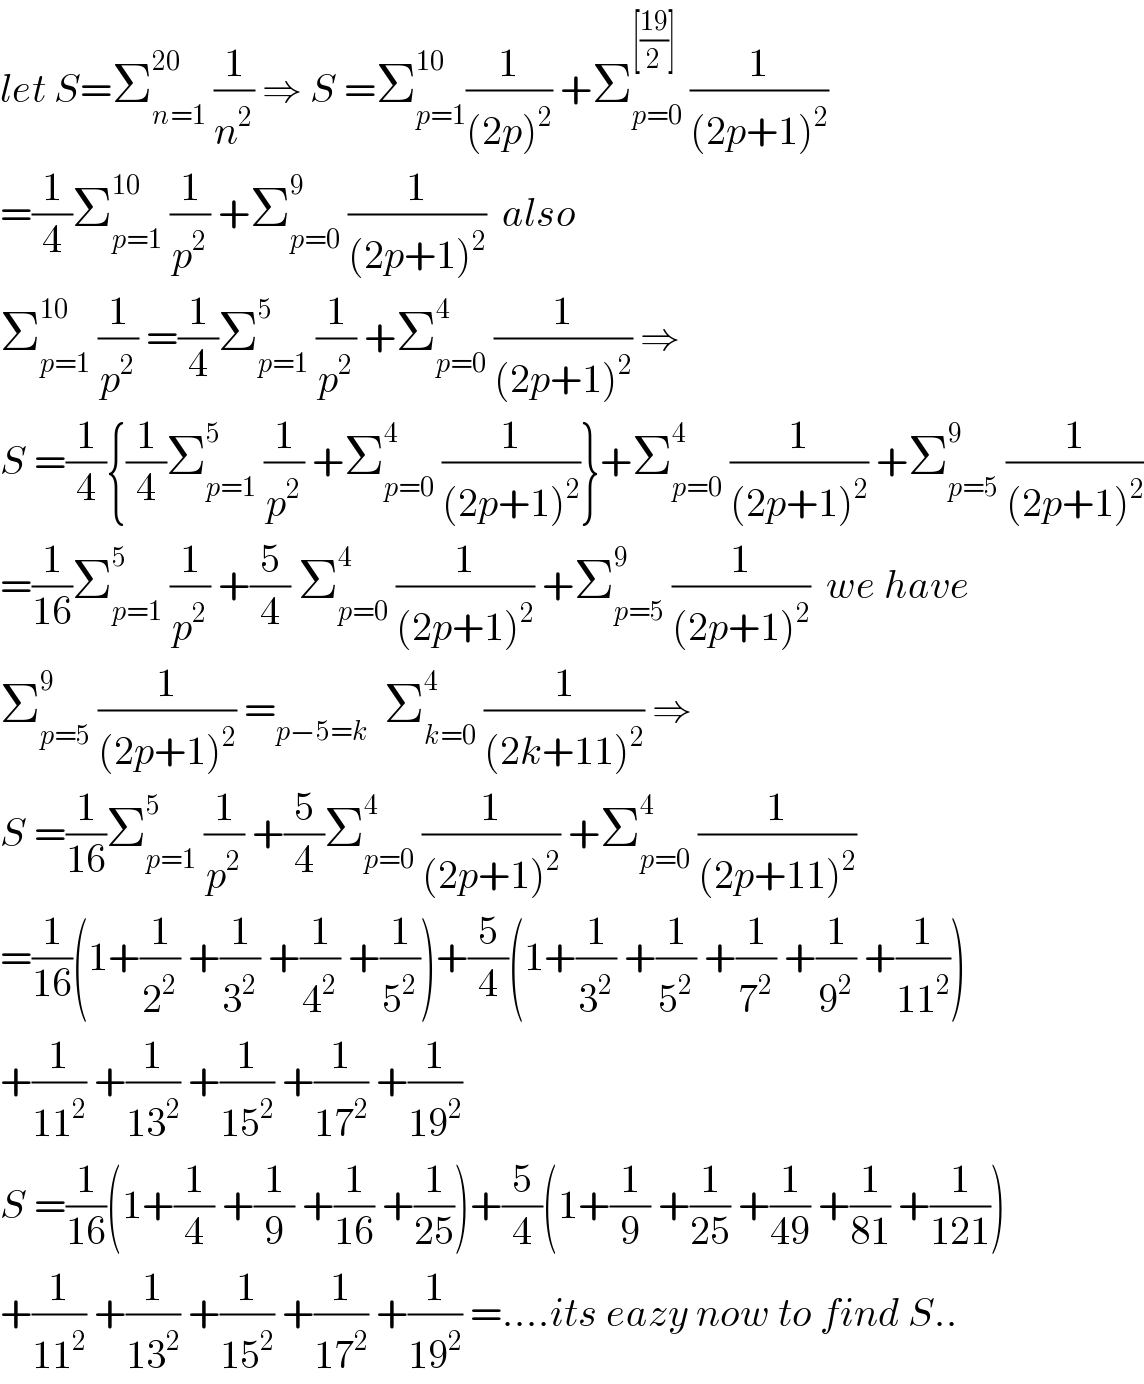 let S=Σ_(n=1) ^(20)  (1/n^2 ) ⇒ S =Σ_(p=1) ^(10) (1/((2p)^2 )) +Σ_(p=0) ^([((19)/2)])  (1/((2p+1)^2 ))  =(1/4)Σ_(p=1) ^(10)  (1/p^2 ) +Σ_(p=0) ^9  (1/((2p+1)^2 ))  also  Σ_(p=1) ^(10)  (1/p^2 ) =(1/4)Σ_(p=1) ^5  (1/p^2 ) +Σ_(p=0) ^4  (1/((2p+1)^2 )) ⇒  S =(1/4){(1/4)Σ_(p=1) ^5  (1/p^2 ) +Σ_(p=0) ^4  (1/((2p+1)^2 ))}+Σ_(p=0) ^4  (1/((2p+1)^2 )) +Σ_(p=5) ^9  (1/((2p+1)^2 ))  =(1/(16))Σ_(p=1) ^5  (1/p^2 ) +(5/4) Σ_(p=0) ^4  (1/((2p+1)^2 )) +Σ_(p=5) ^9  (1/((2p+1)^2 ))  we have  Σ_(p=5) ^9  (1/((2p+1)^2 )) =_(p−5=k)   Σ_(k=0) ^4  (1/((2k+11)^2 )) ⇒  S =(1/(16))Σ_(p=1) ^5  (1/p^2 ) +(5/4)Σ_(p=0) ^4  (1/((2p+1)^2 )) +Σ_(p=0) ^4  (1/((2p+11)^2 ))  =(1/(16))(1+(1/2^2 ) +(1/3^2 ) +(1/4^2 ) +(1/5^2 ))+(5/4)(1+(1/3^2 ) +(1/5^2 ) +(1/7^2 ) +(1/9^2 ) +(1/(11^2 )))  +(1/(11^2 )) +(1/(13^2 )) +(1/(15^2 )) +(1/(17^2 )) +(1/(19^2 ))  S =(1/(16))(1+(1/4) +(1/9) +(1/(16)) +(1/(25)))+(5/4)(1+(1/9) +(1/(25)) +(1/(49)) +(1/(81)) +(1/(121)))  +(1/(11^2 )) +(1/(13^2 )) +(1/(15^2 )) +(1/(17^2 )) +(1/(19^2 )) =....its eazy now to find S..  